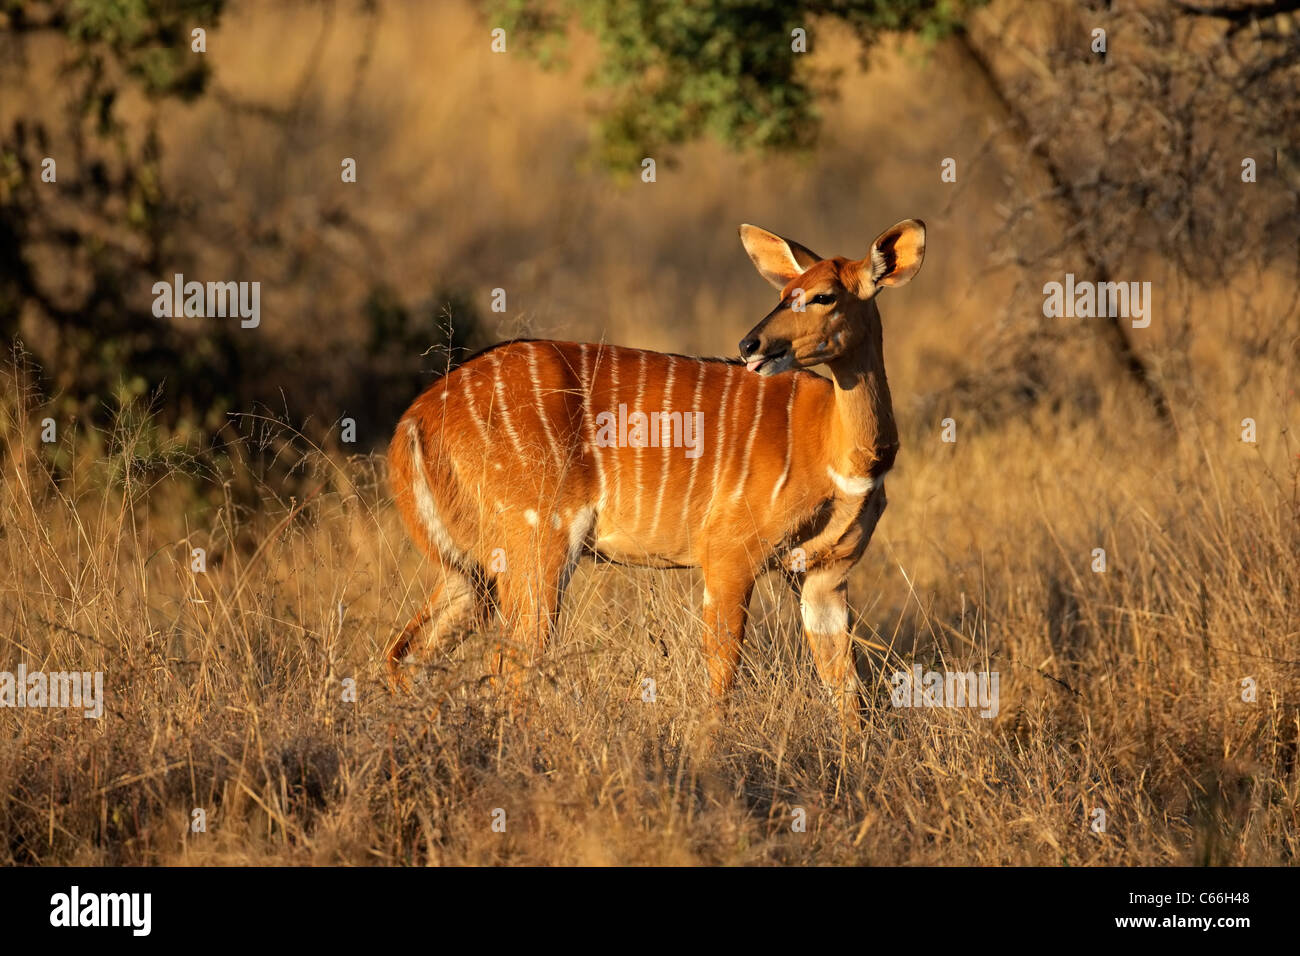 Female Nyala antelope (Tragelaphus angasii), South Africa Stock Photo